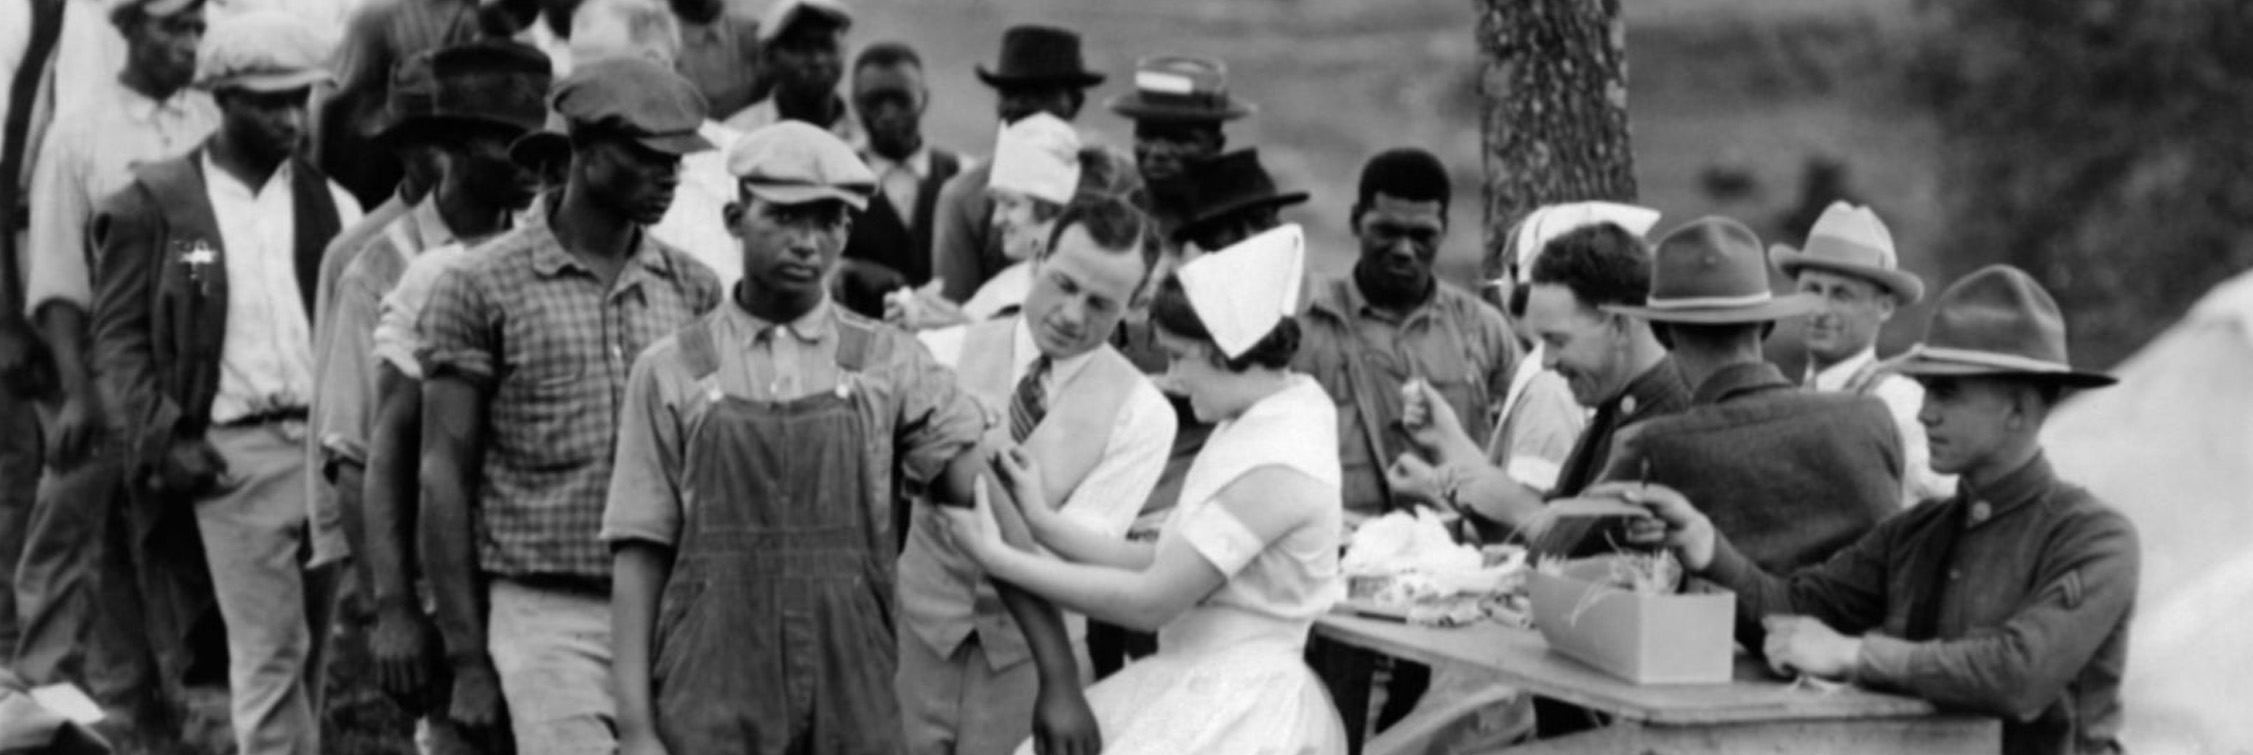 El 'experimento de Tuskegee': el estudio médico más infame y racista de la historia de Estados Unidos